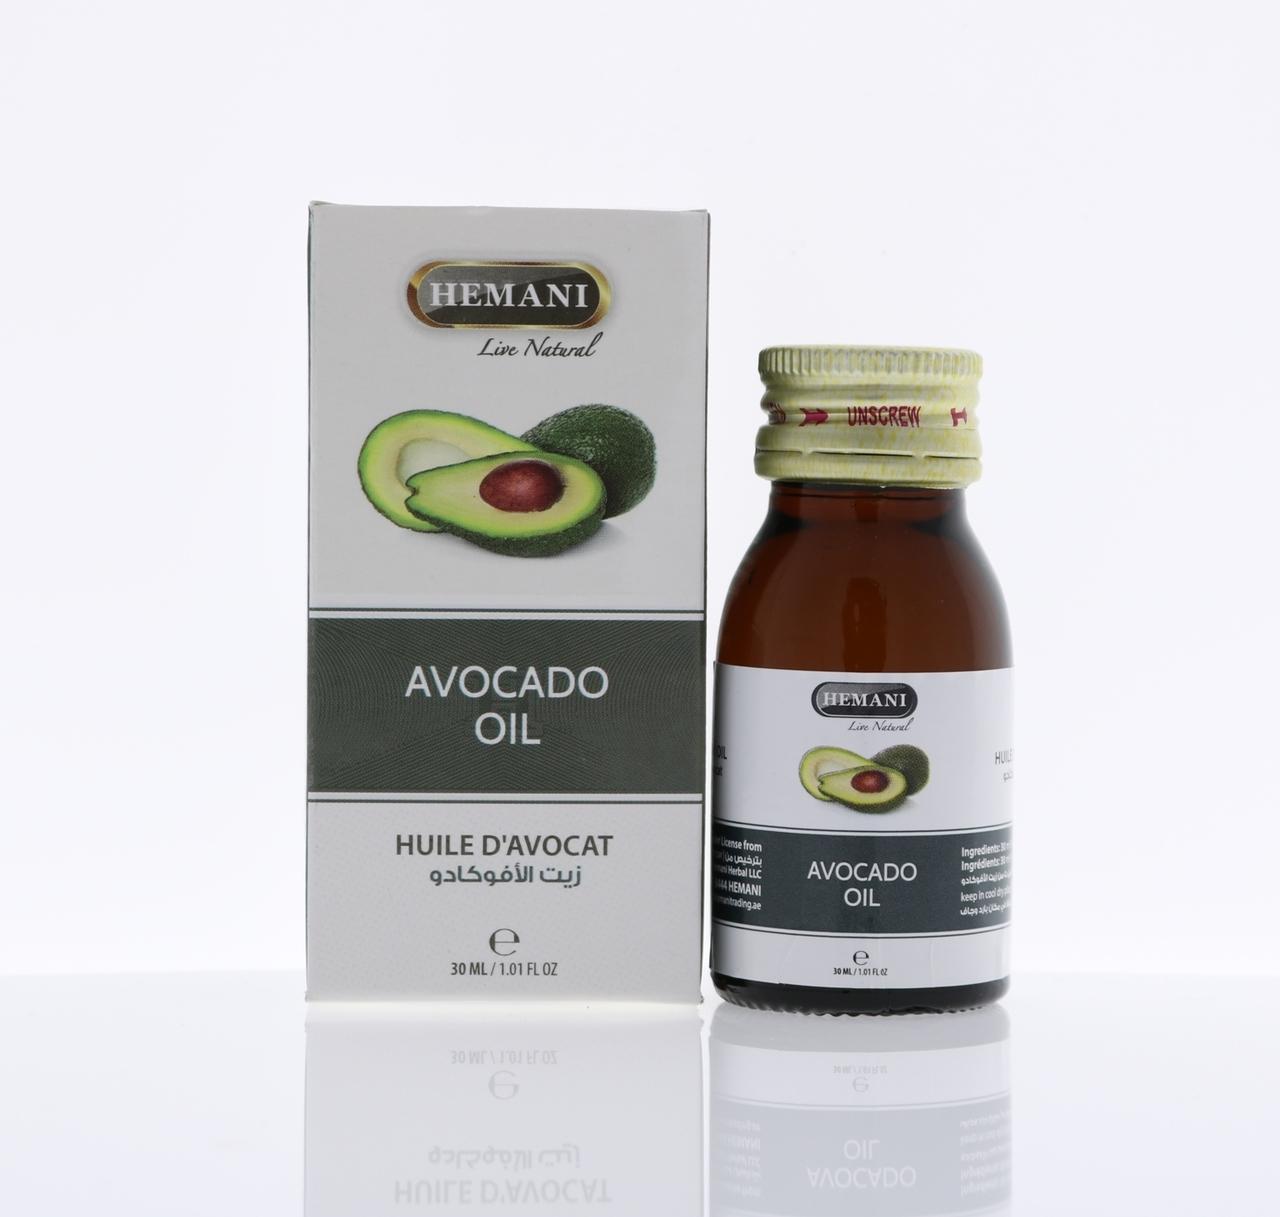 Hemani Avocado Oil